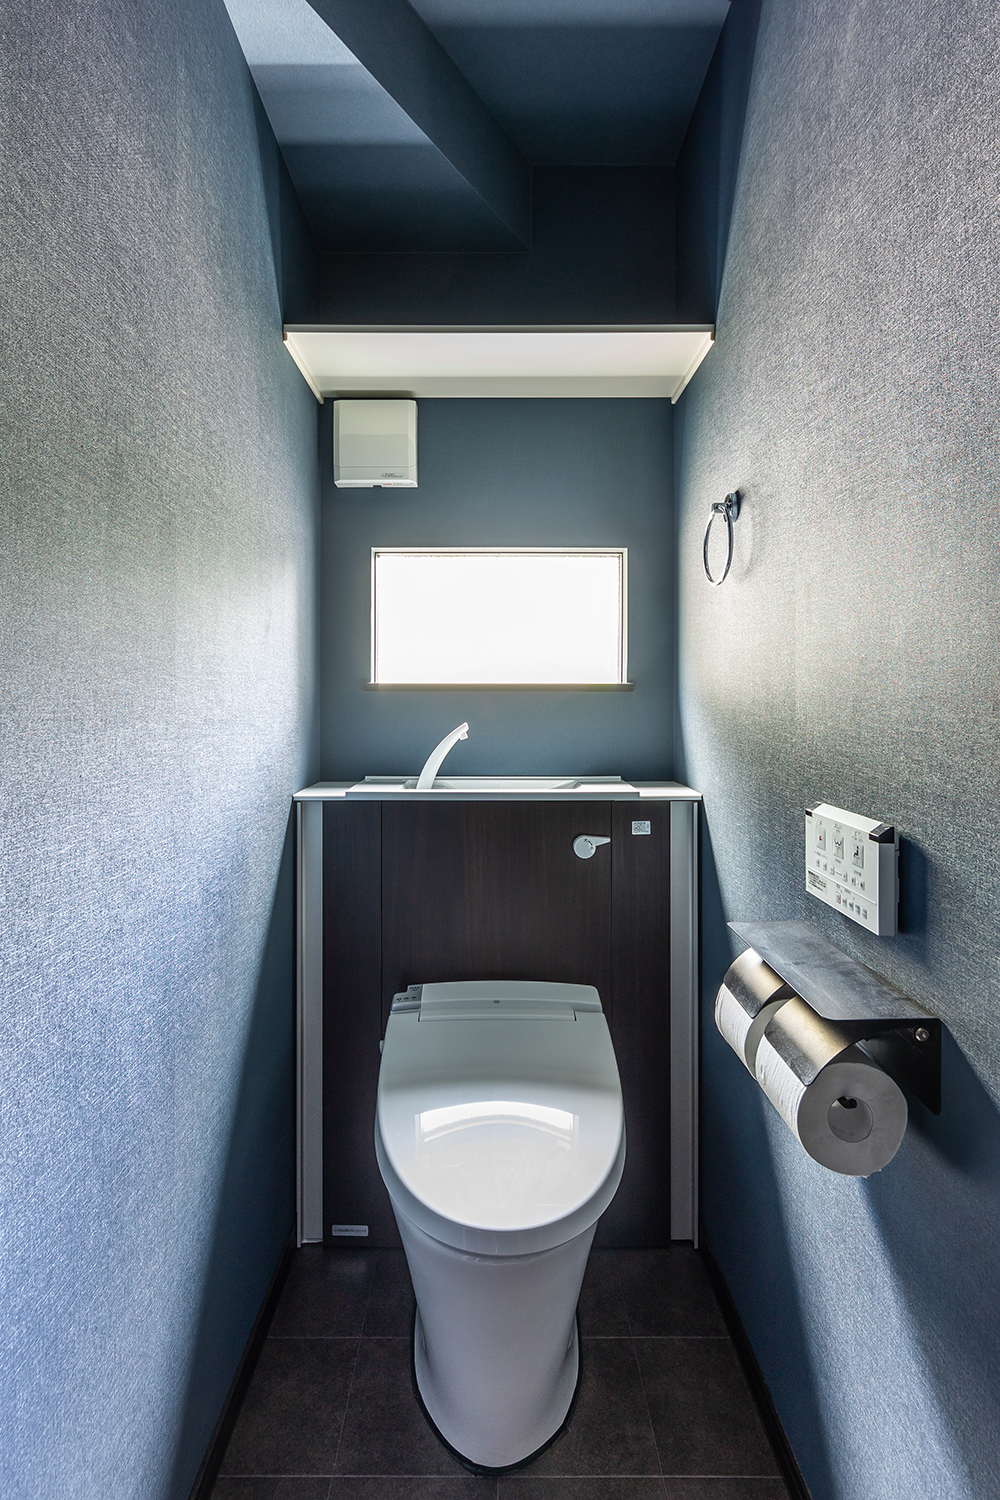 明るい光が差し込むトイレ。<br />
収納キャビネットがあるため、トイレ用品をコンパクトに収納することができます。<br />
